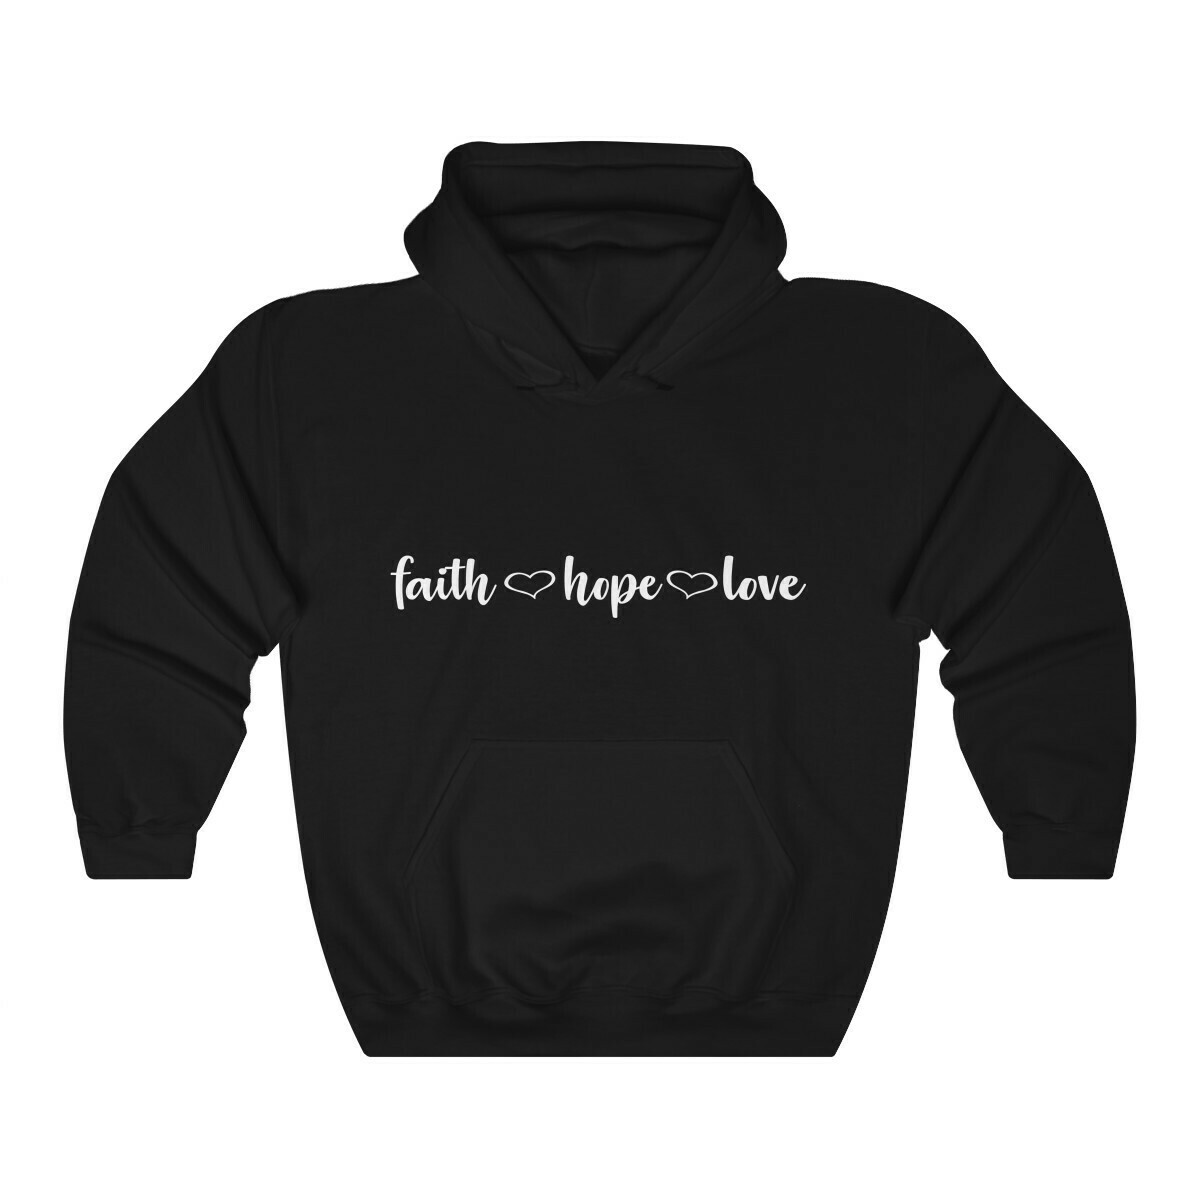 *Faith•Hope•Love - 18500